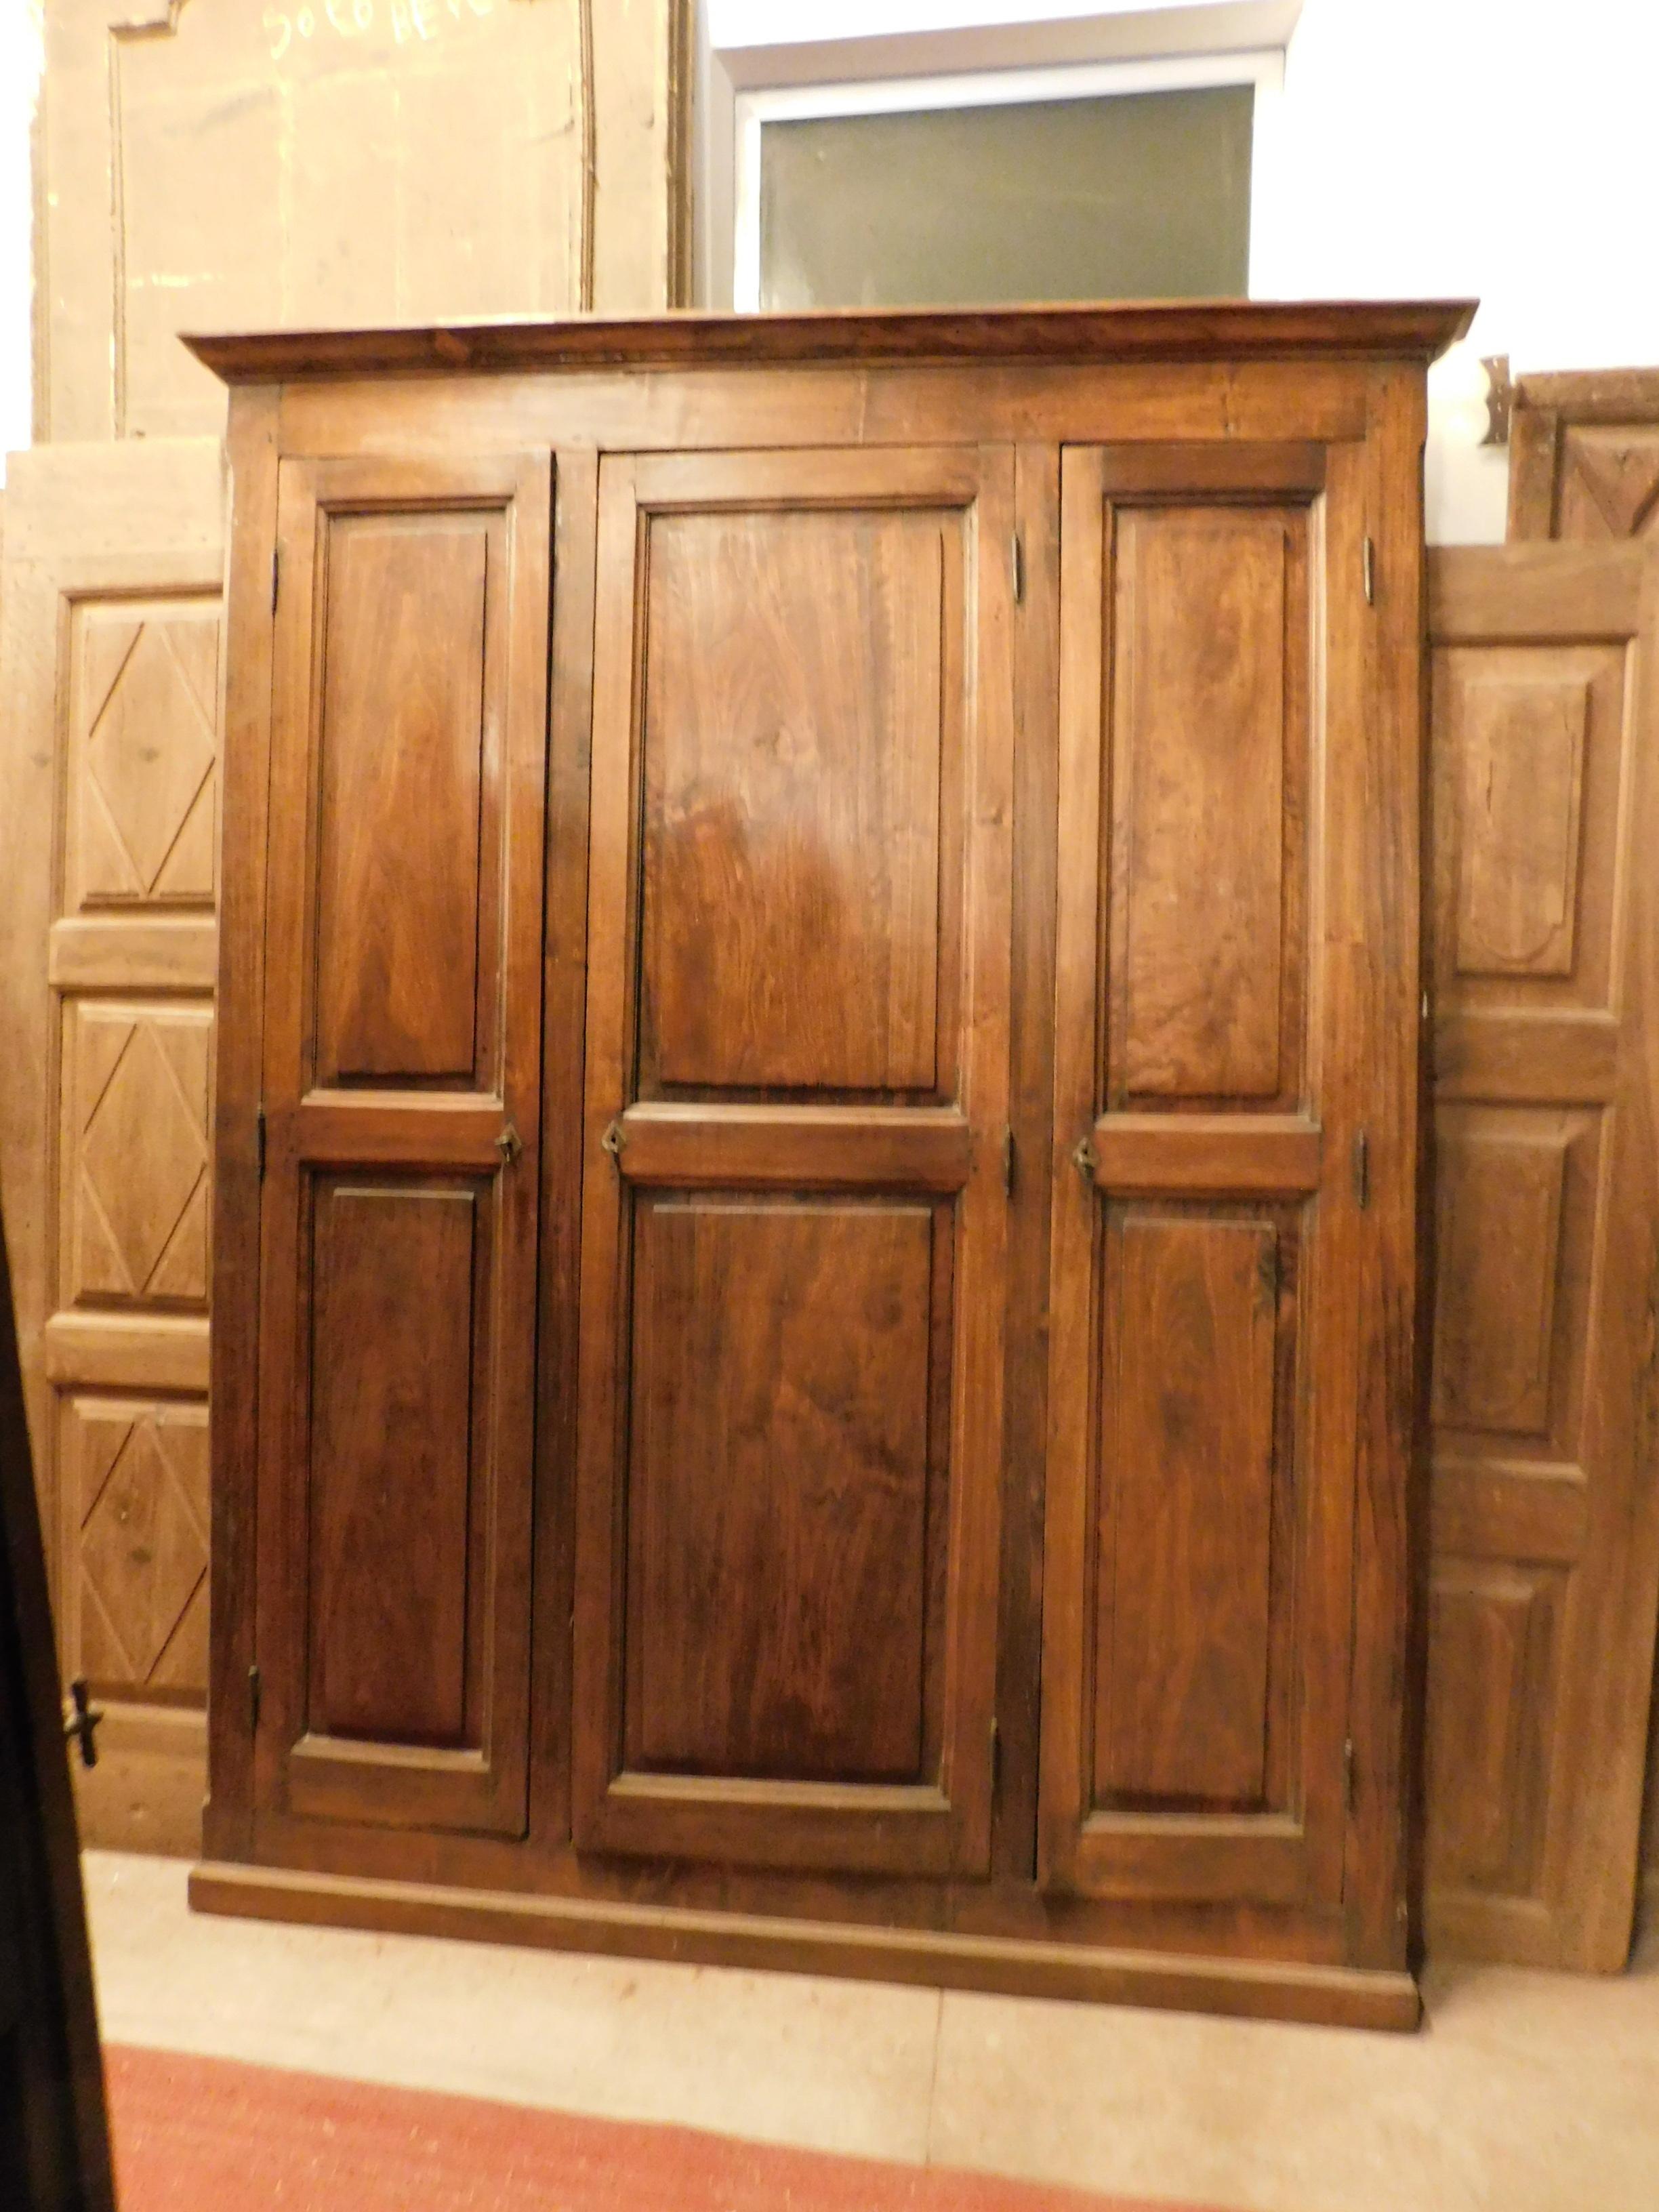 Armoire ancienne, placard, armoire encastrée, construite et sculptée à la main en bois de peuplier, avec trois portes avec cadre d'origine, construite à la main au 19ème siècle en Italie.
Idéal pour réaliser une armoire encastrée dans le mur, il